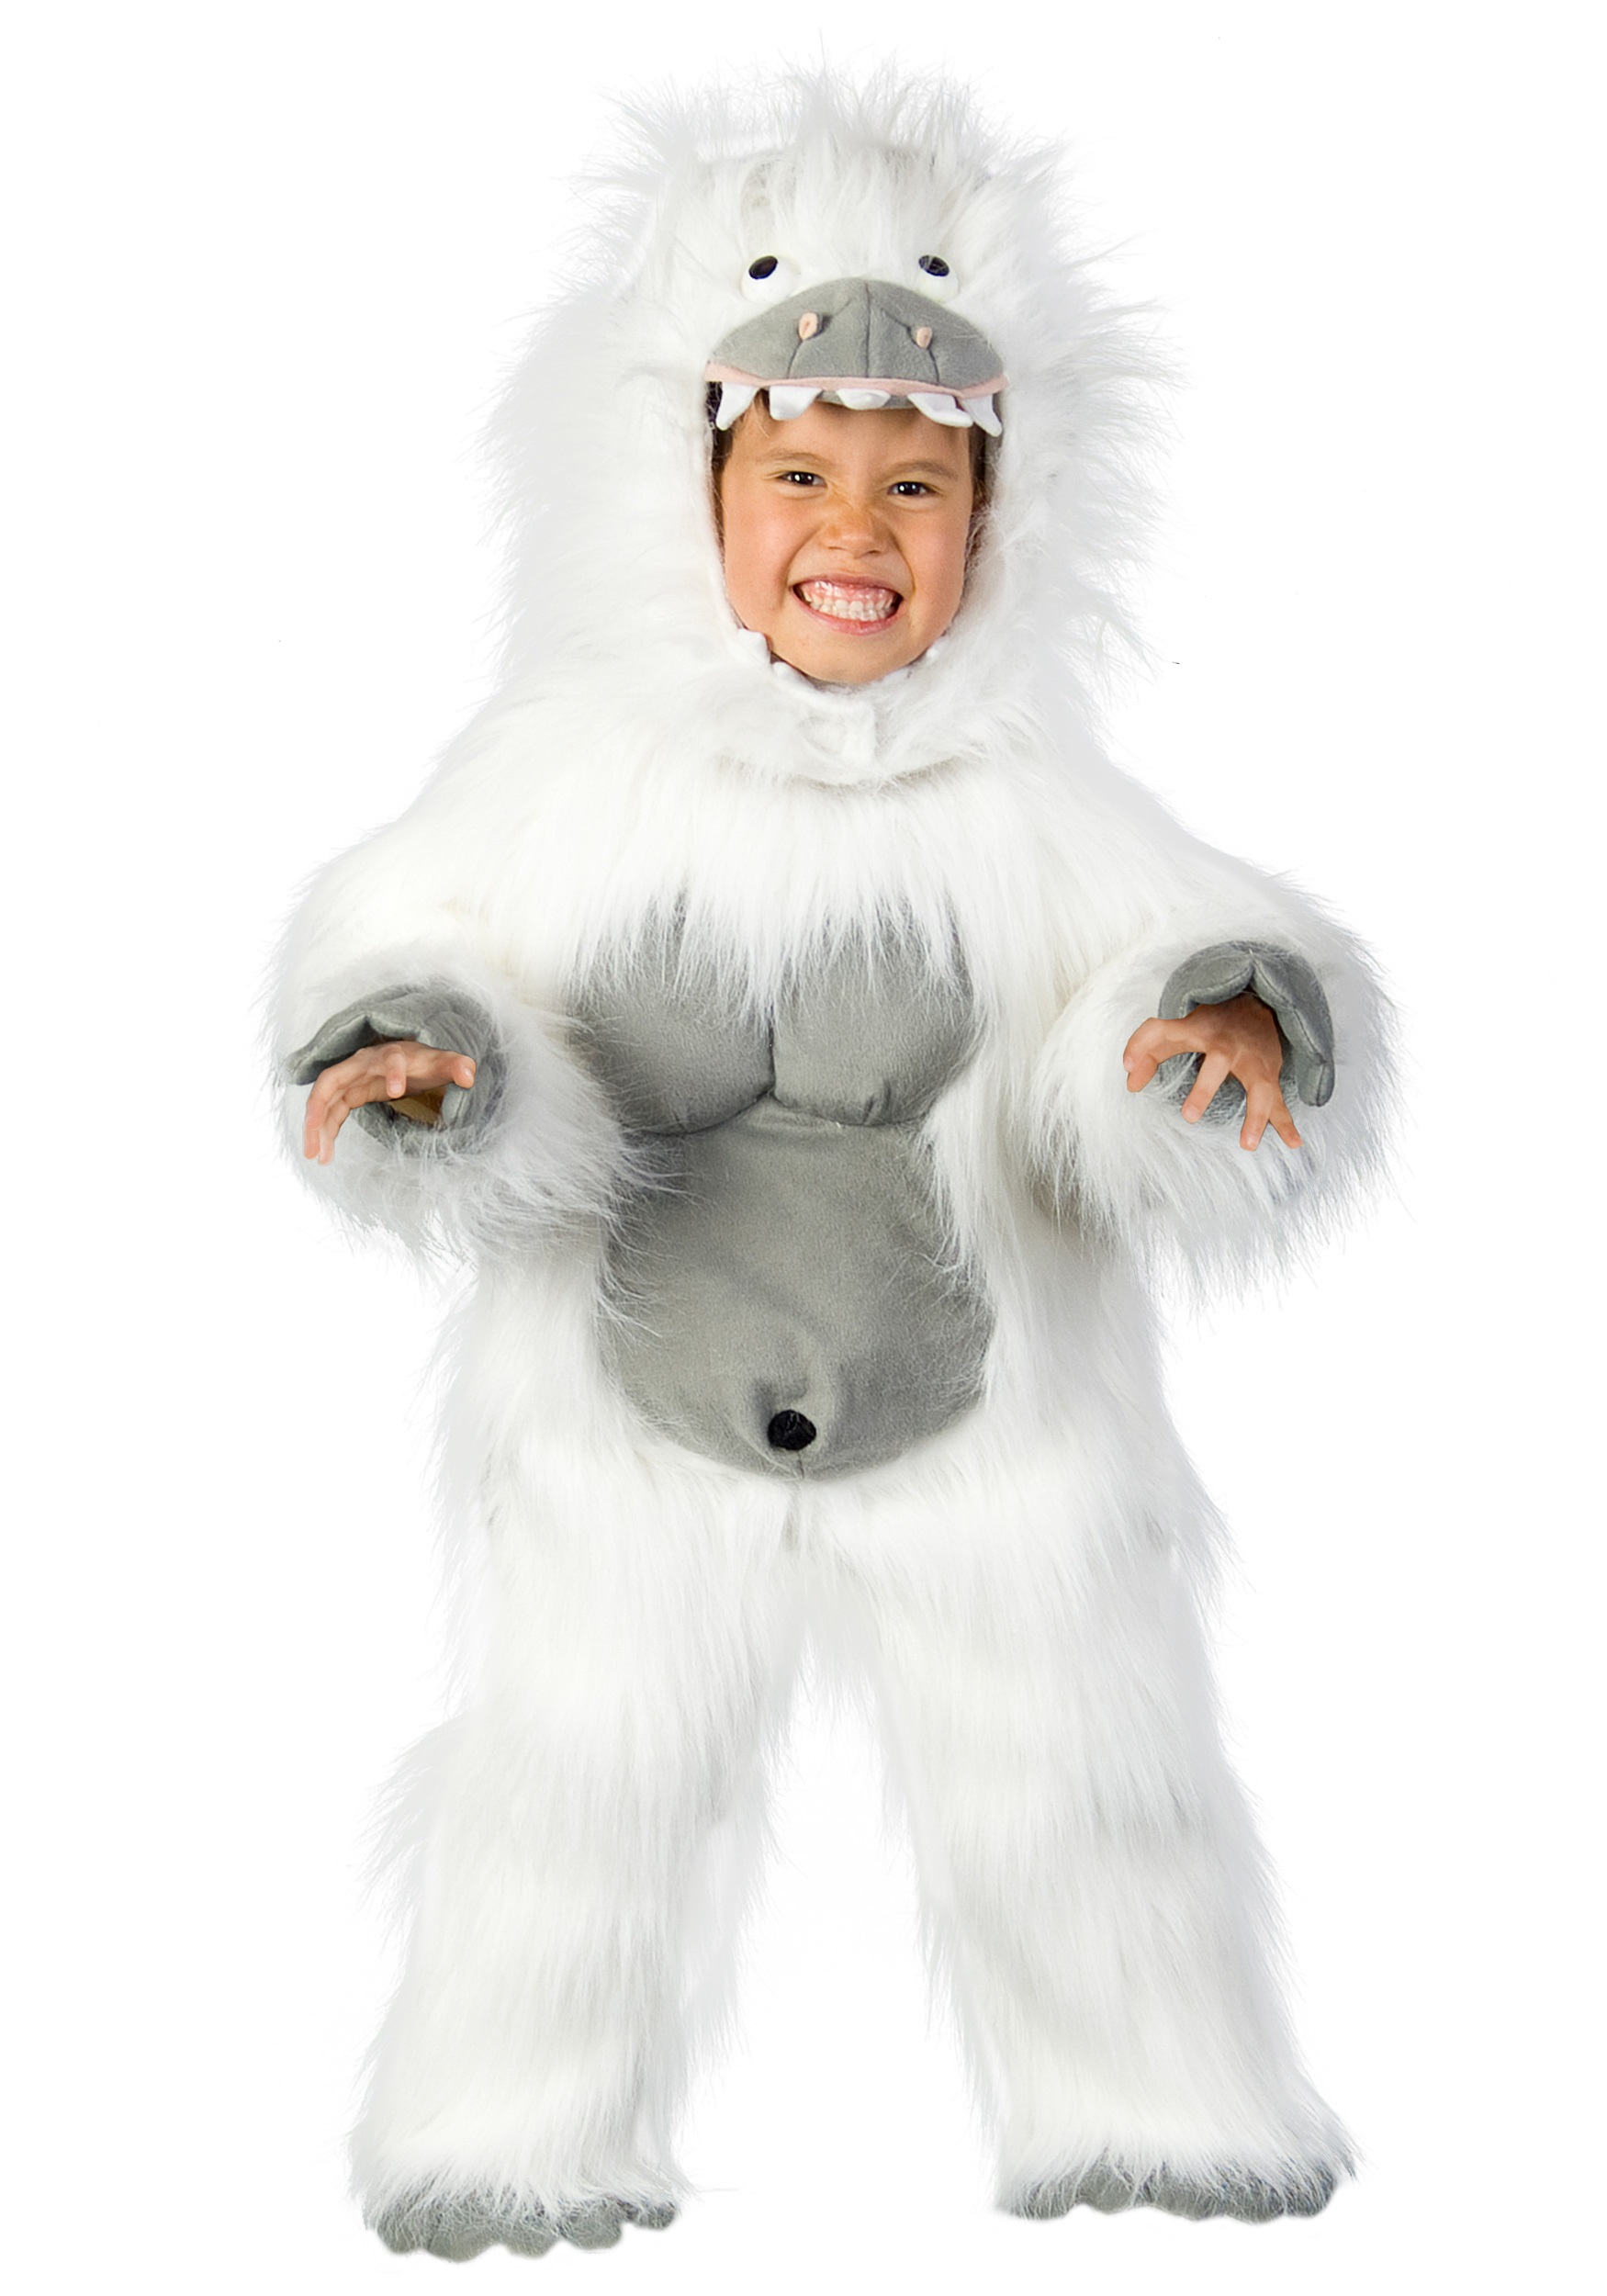 Abominable Snowman Costume - Halloween Costume Ideas 2019